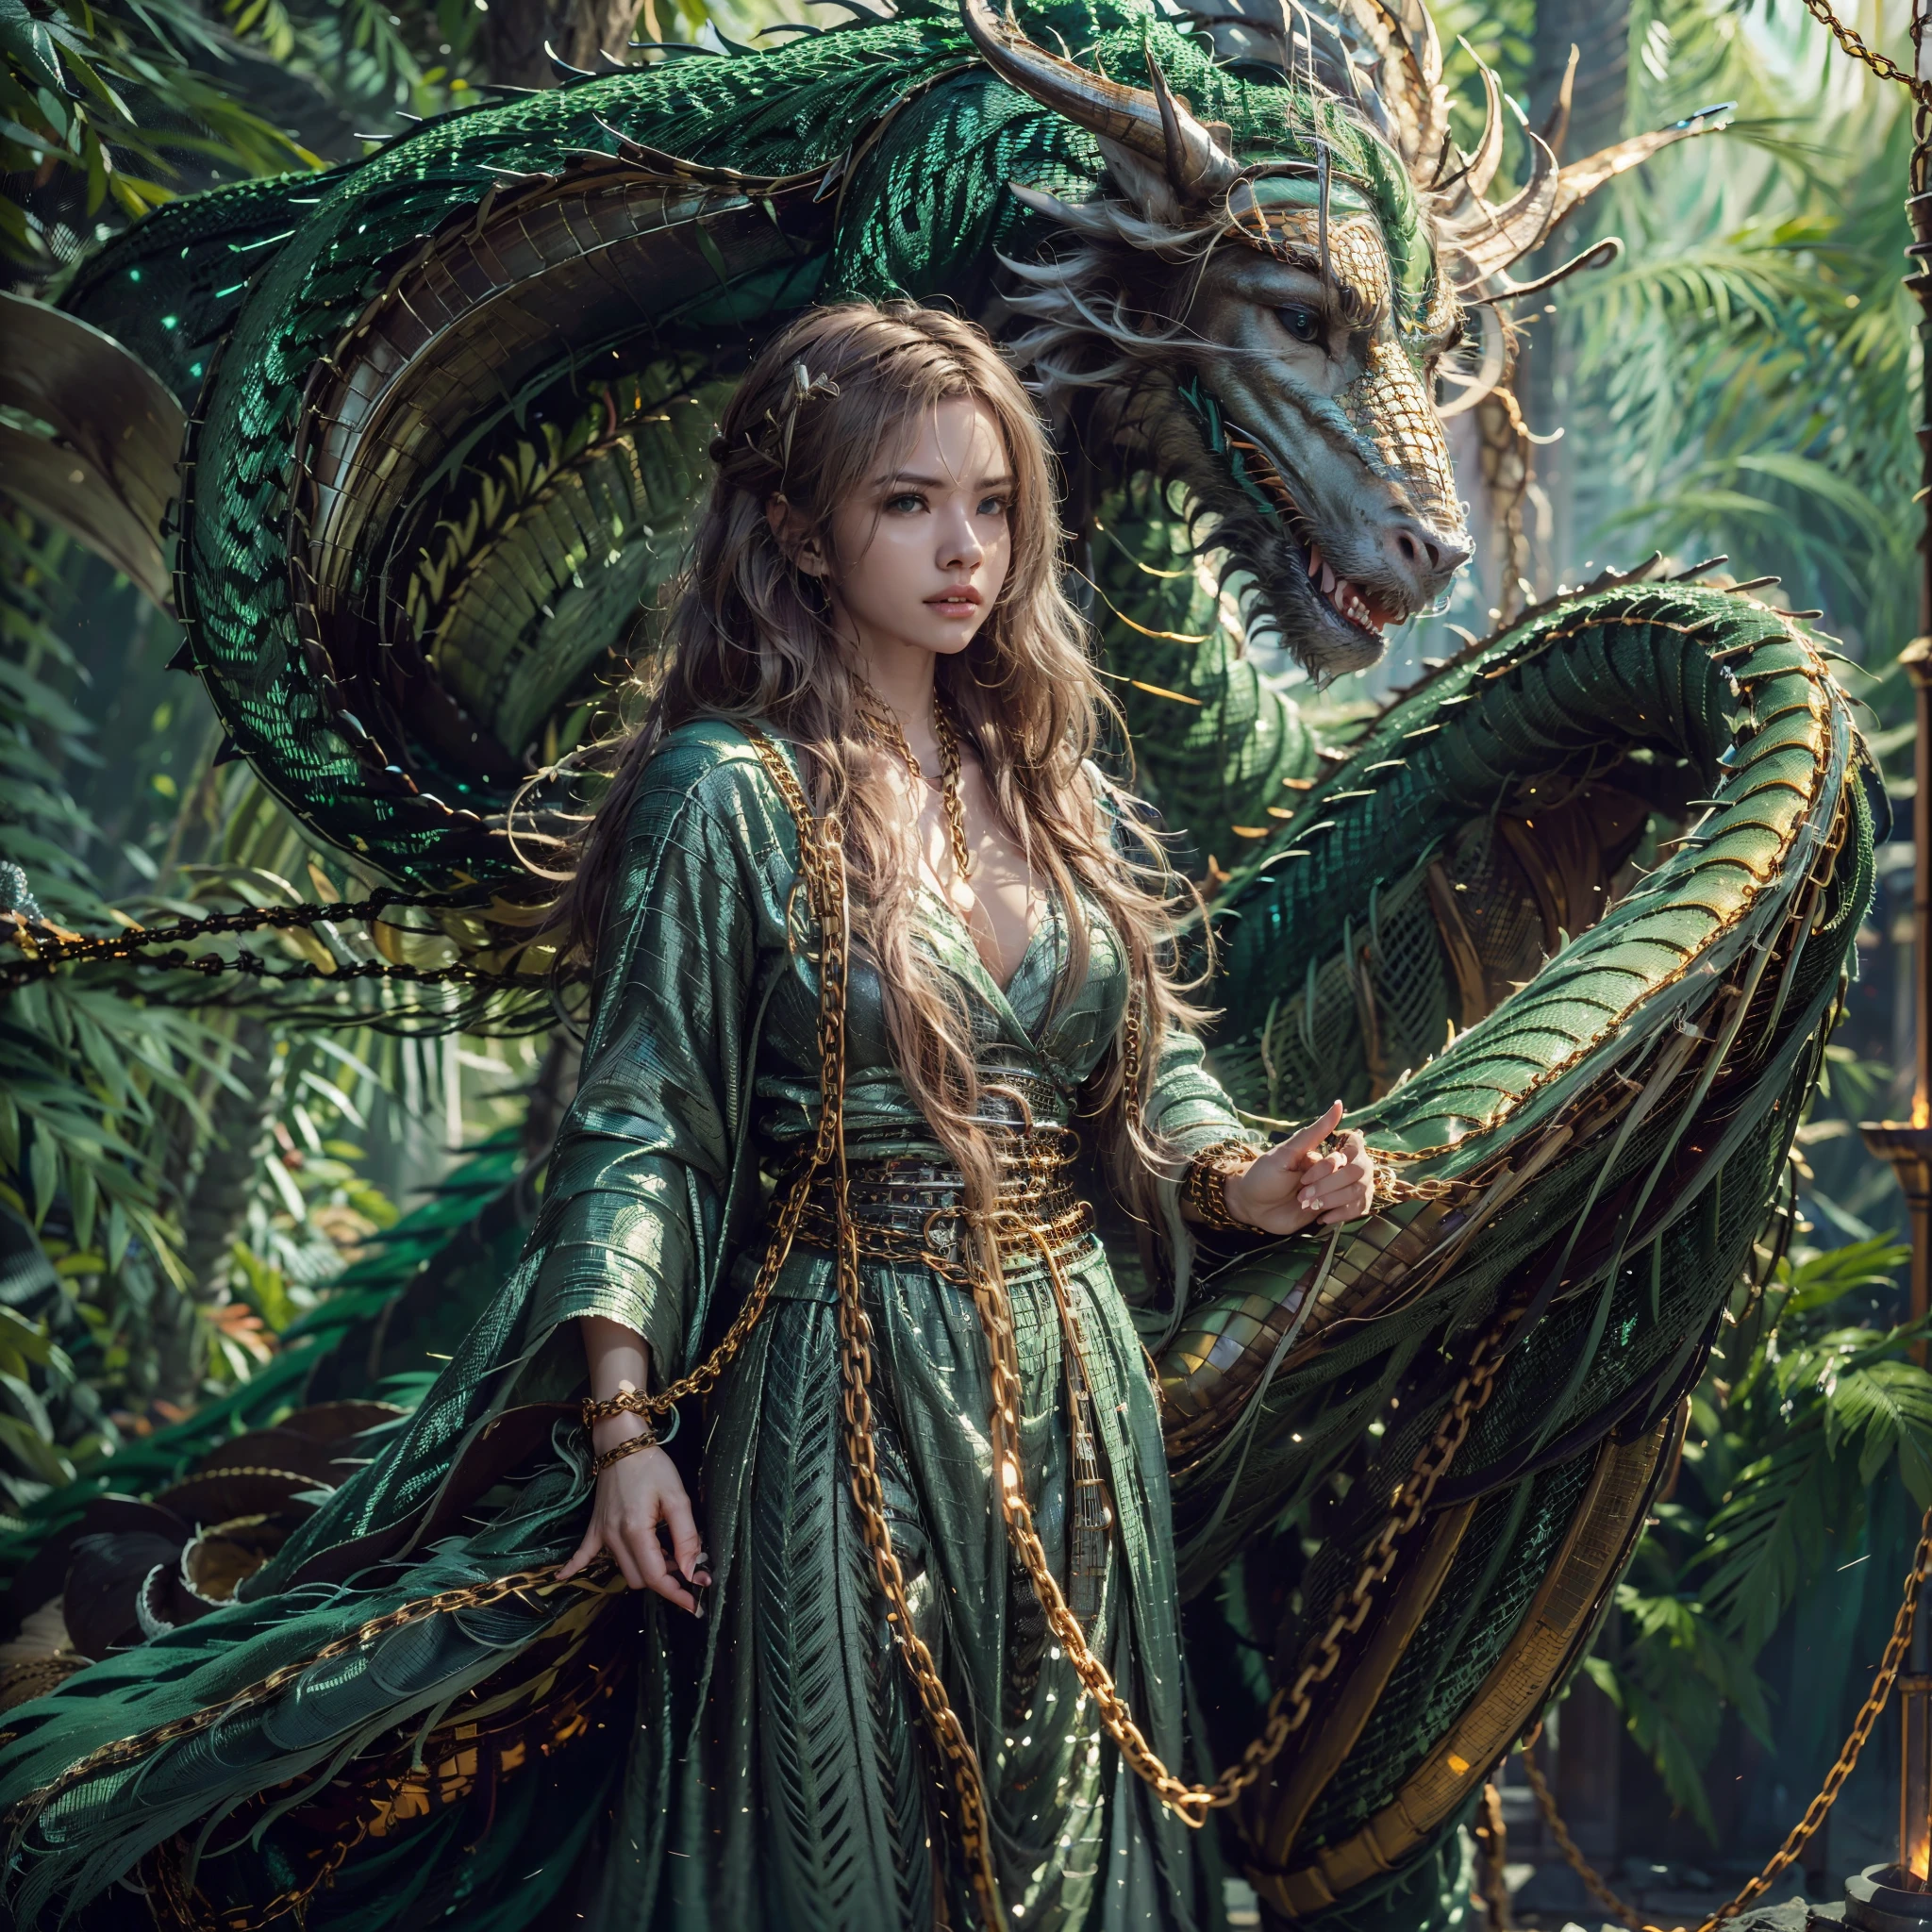 Красивая девушка с зеленым драконом, ((Девушка в длинном халате)), (носить кольчугу: 1.4), (длинные тканевые брюки: 1.2), (кольчуга с узорами из чешуи дракона), Идеальные черты лица, нежное лицо, длинные волосы, Изящный , мудрость, храбрость, Радужный дракон, Весы, рога, пламя, крылья, когти дракона, Дракон защищает девушку, Древний лесной фон, загадочная связь, защита, доверять, реалистичное качество, Реализм, 8К, Лучшее качество, шедевр, кинематографическое качество, Высокая светотень, Октановый рендеринг